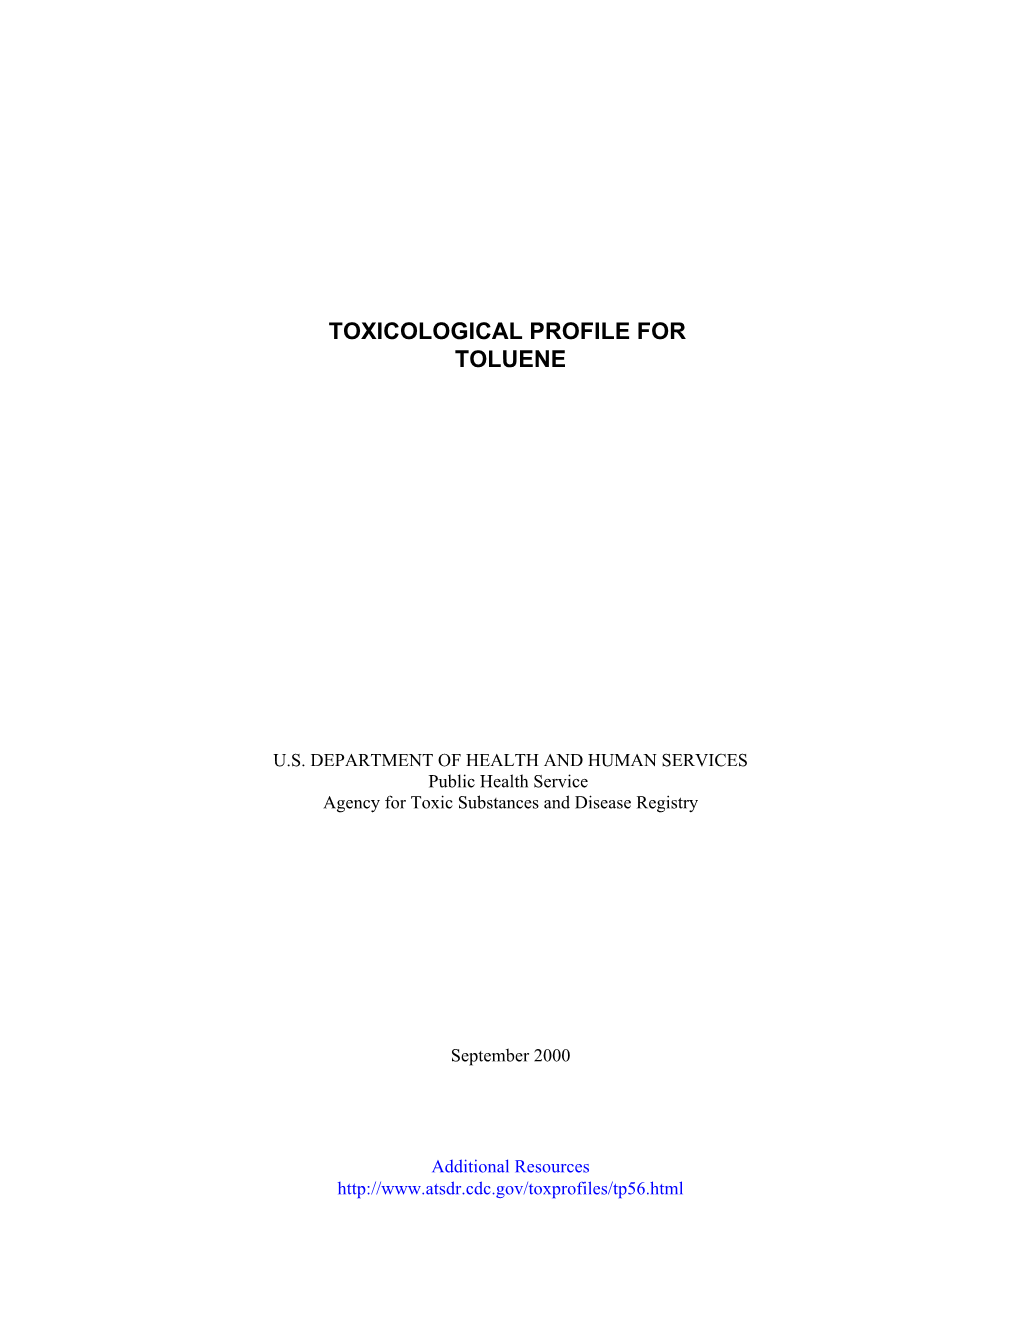 Toxicological Profile for Toluene